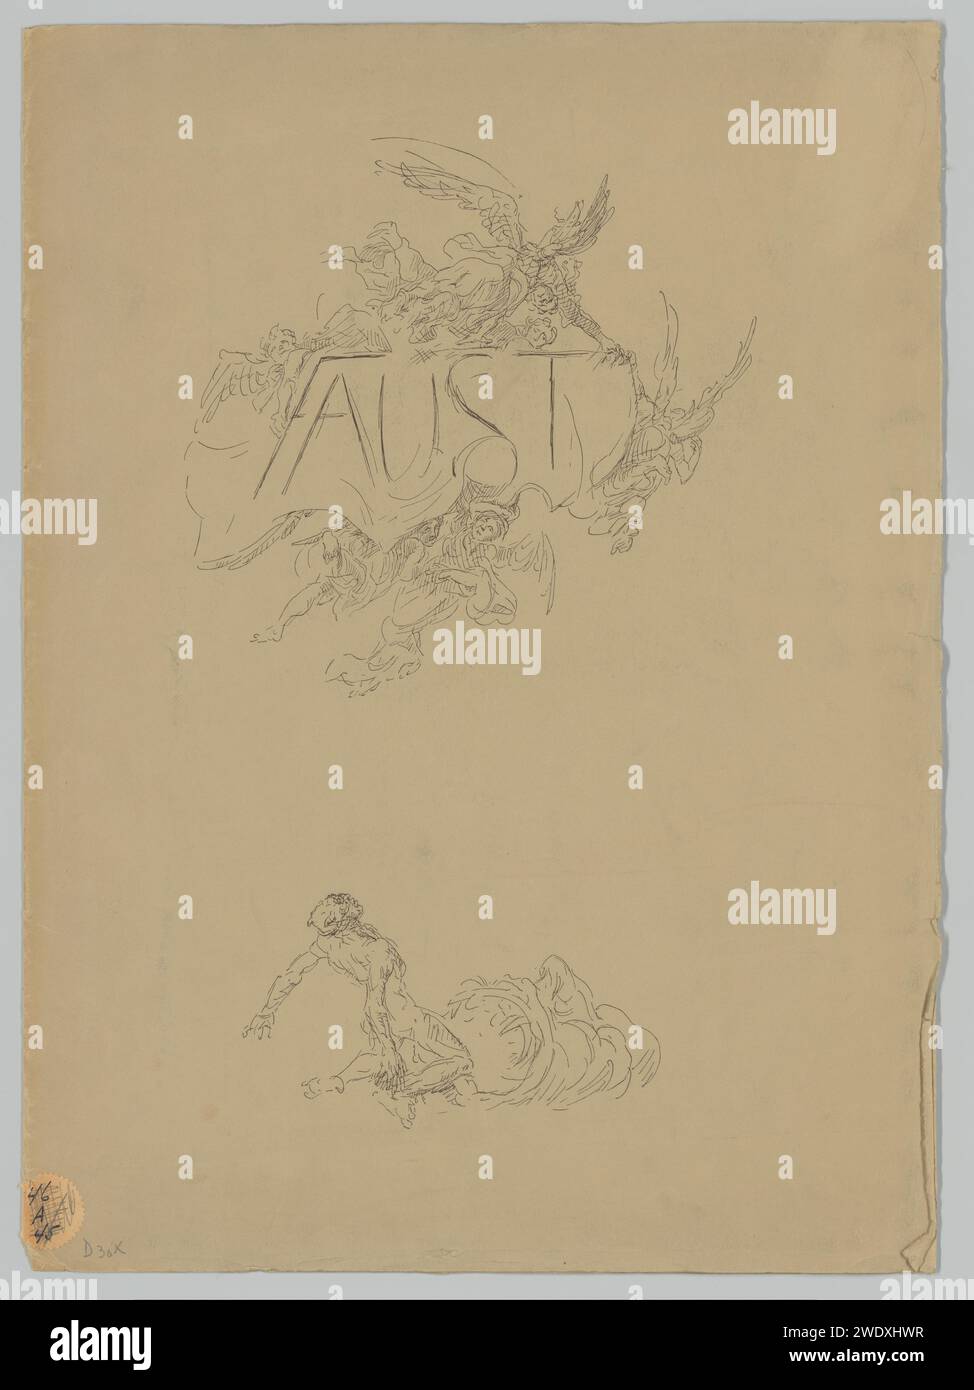 Couverture pour l'offre d'abonnement pour Faust II, Max Slevogt, 1925 couverture imprimée contenant quatre pages avec performances et texte. Gravure sur papier / impression typographique Faust Banque D'Images